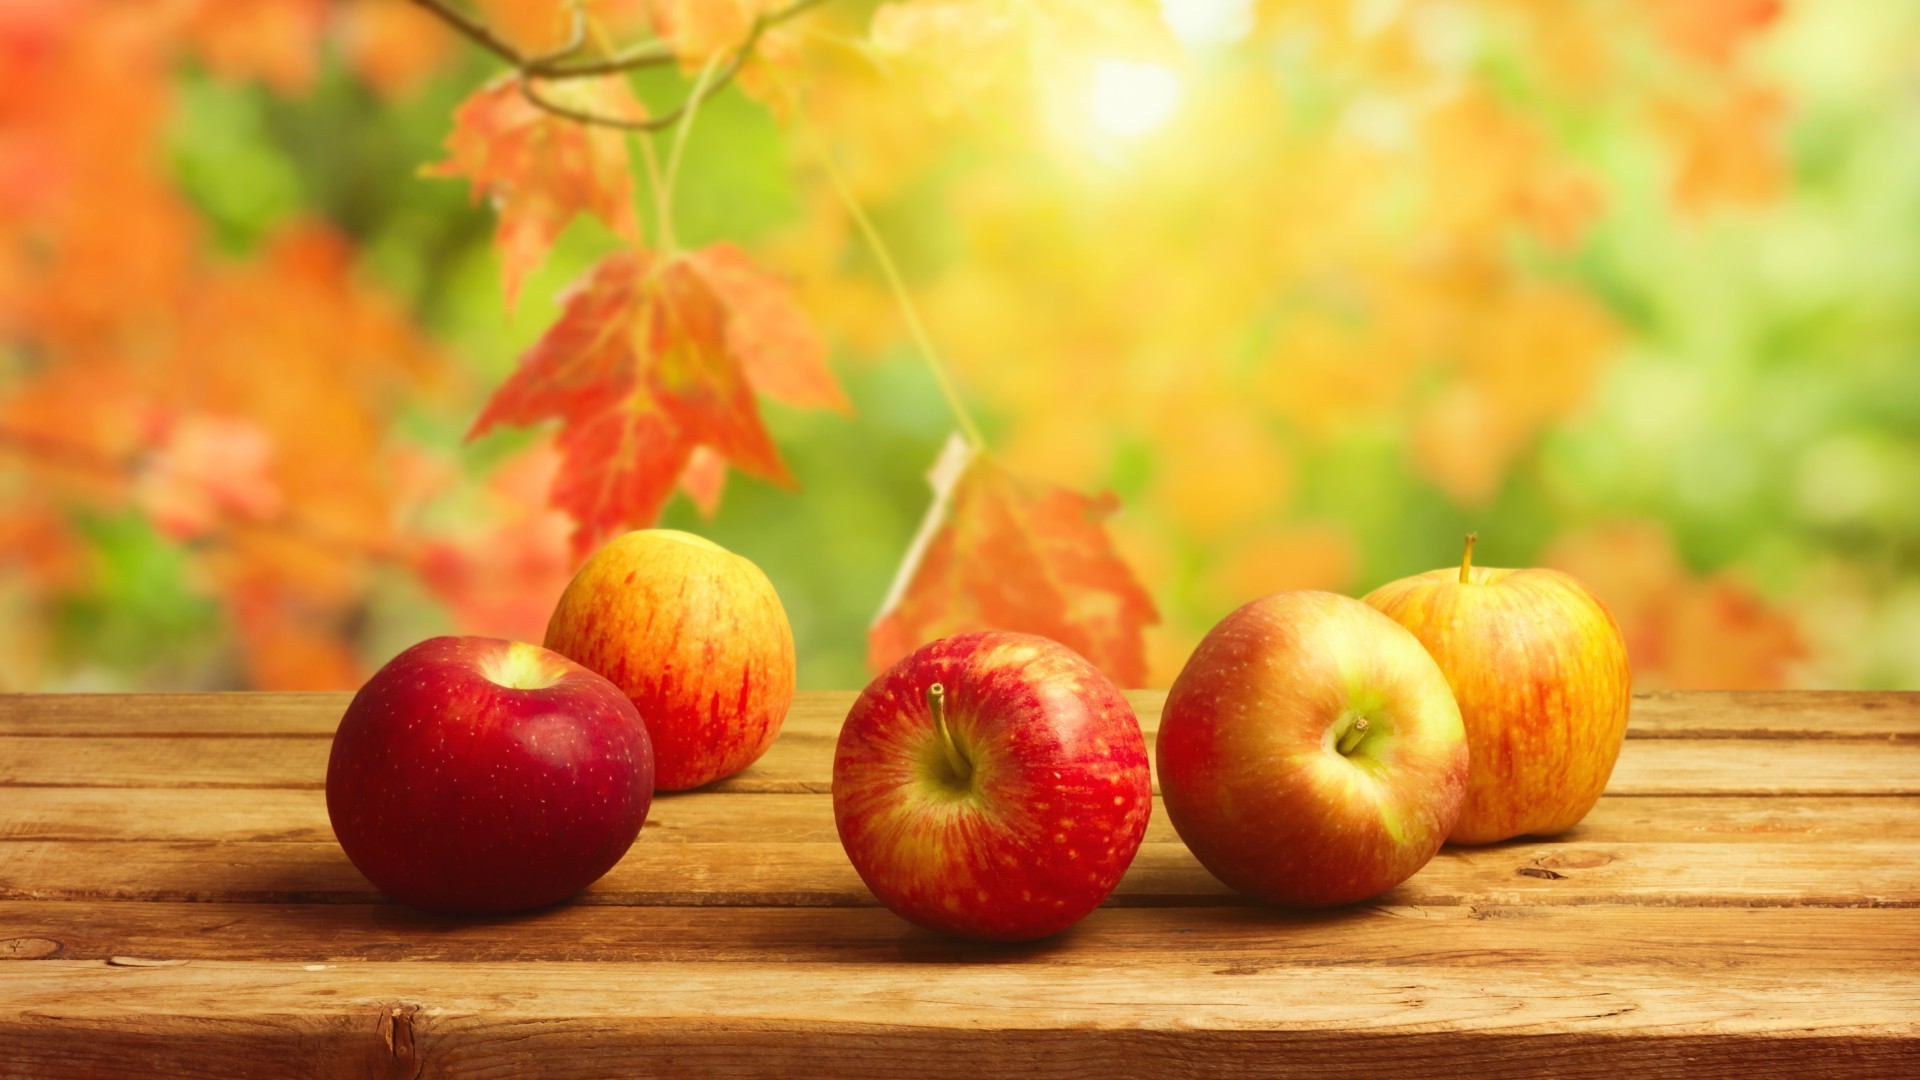 фрукты яблоко лист еда осень сочные здоровый питание здоровья пастбище природа вкусные сад кондитерское изделие свежесть диета цвет партия сельское хозяйство